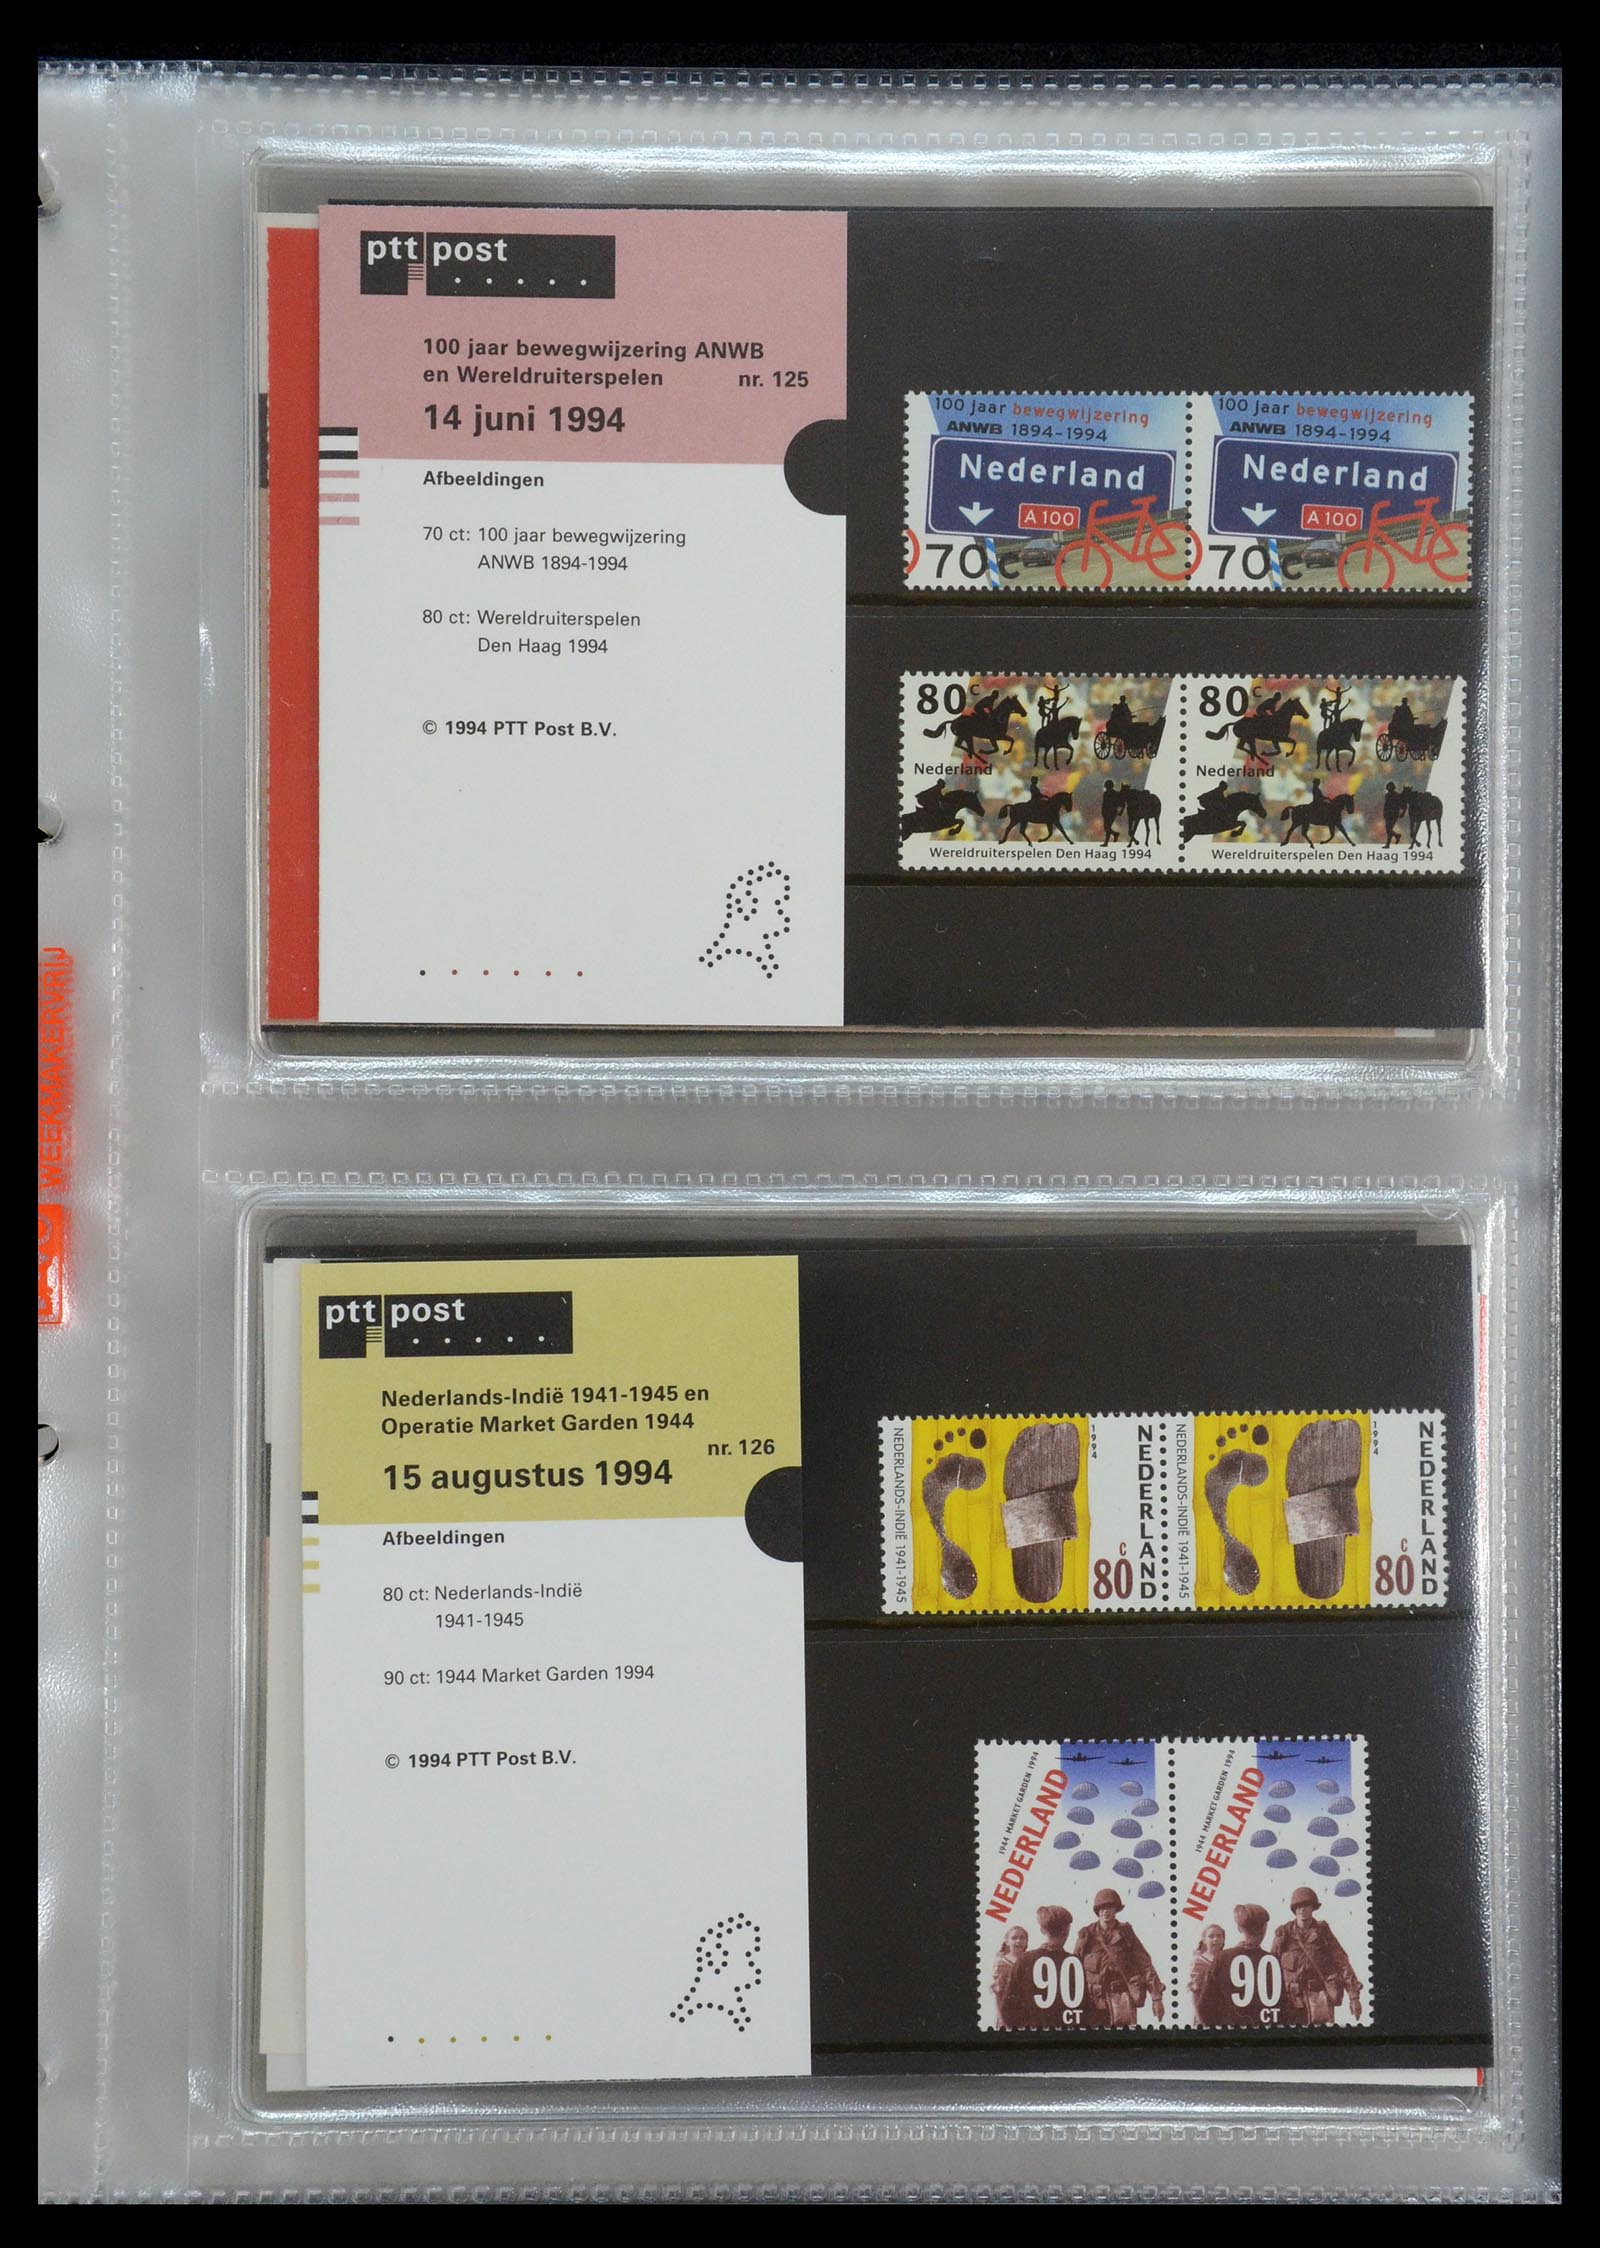 35144 065 - Stamp Collection 35144 Netherlands PTT presentation packs 1982-2021!